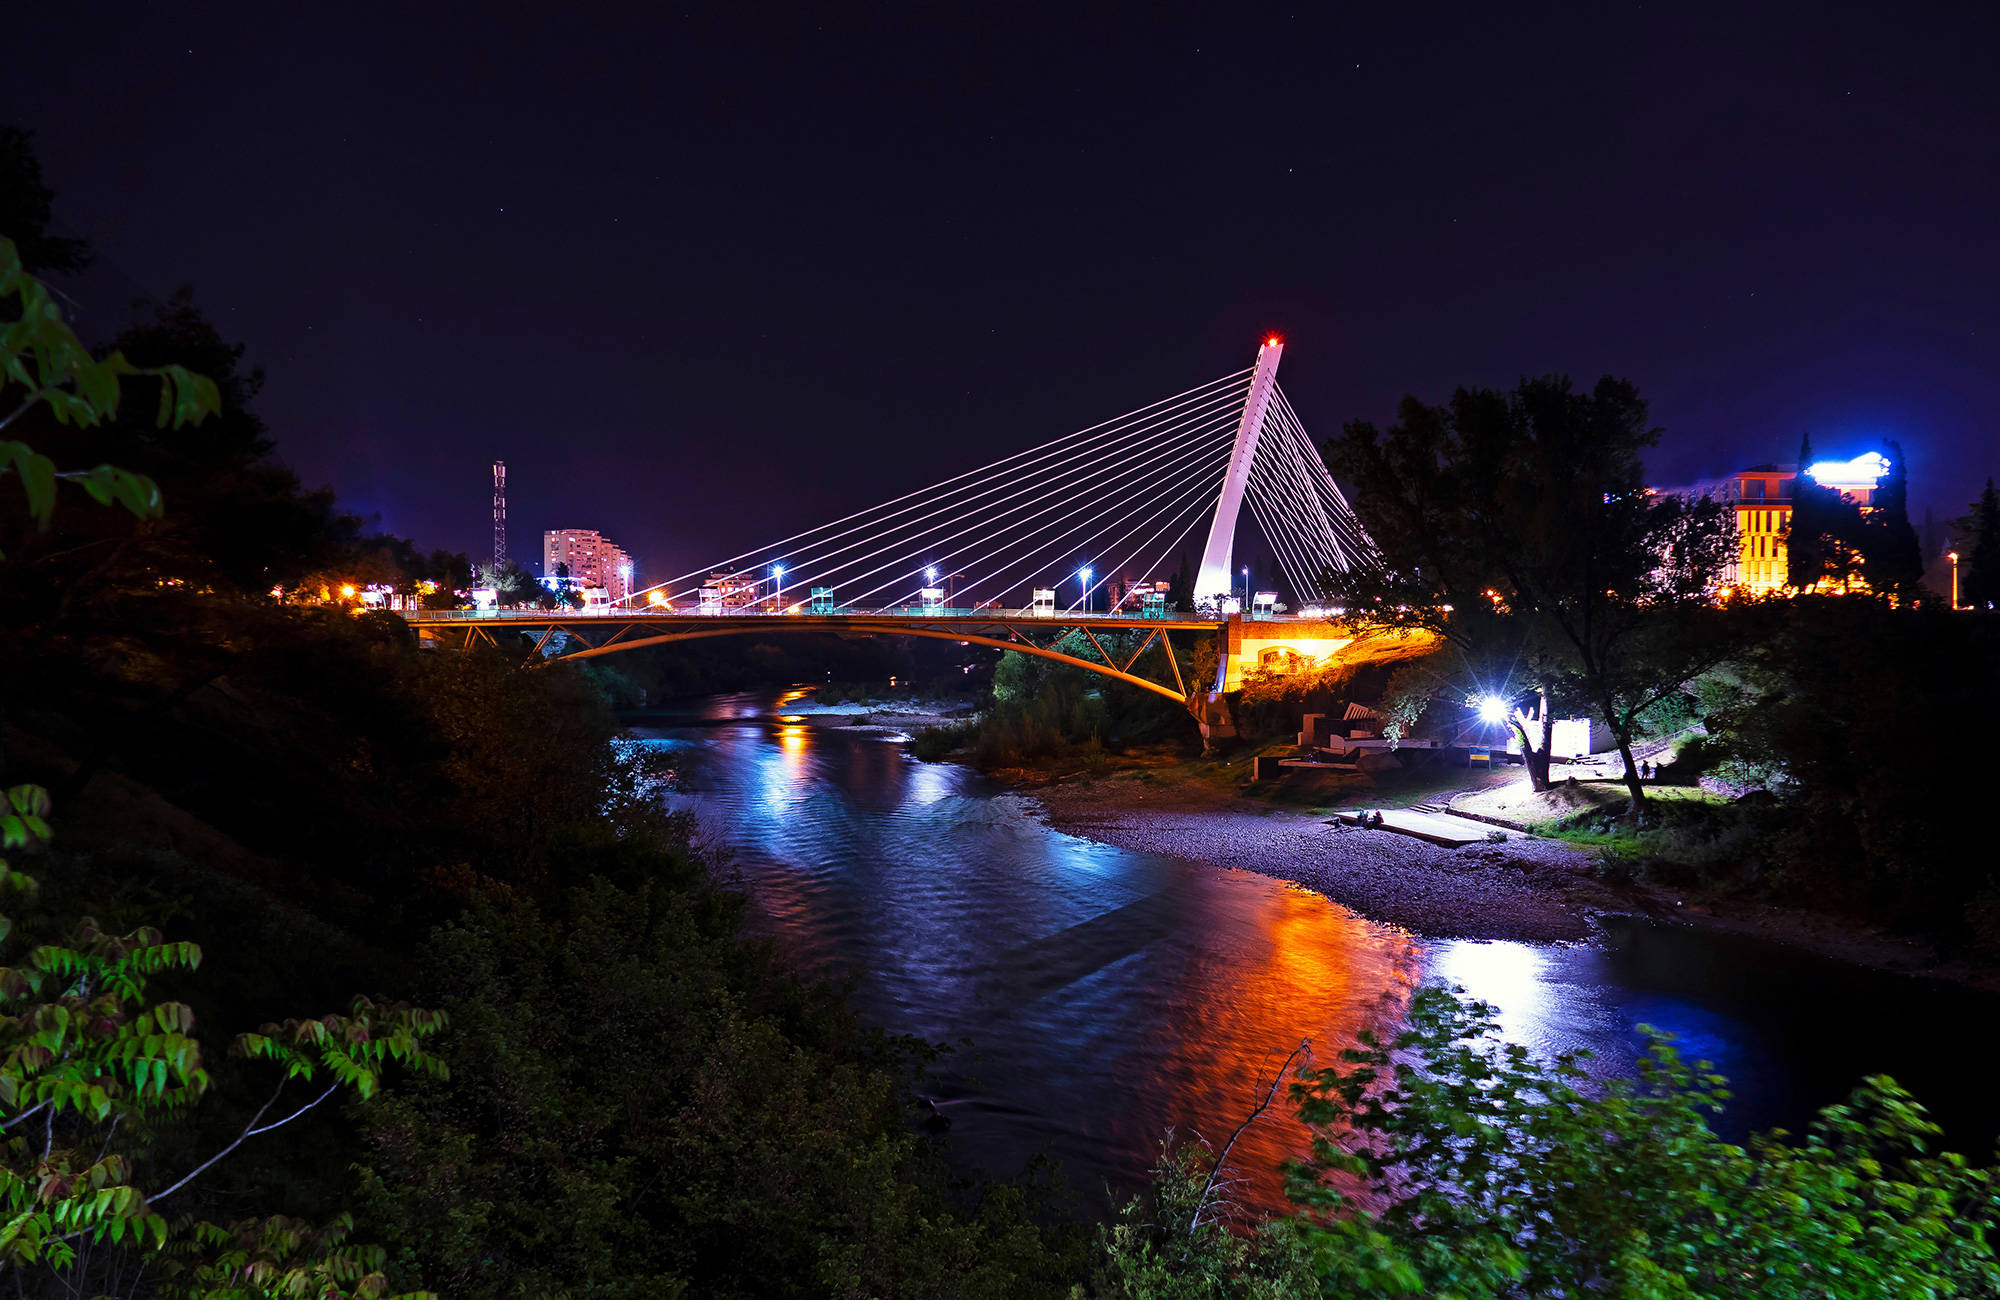 De Millennium brug in de avond | Reizen naar Podgorica | KILROY